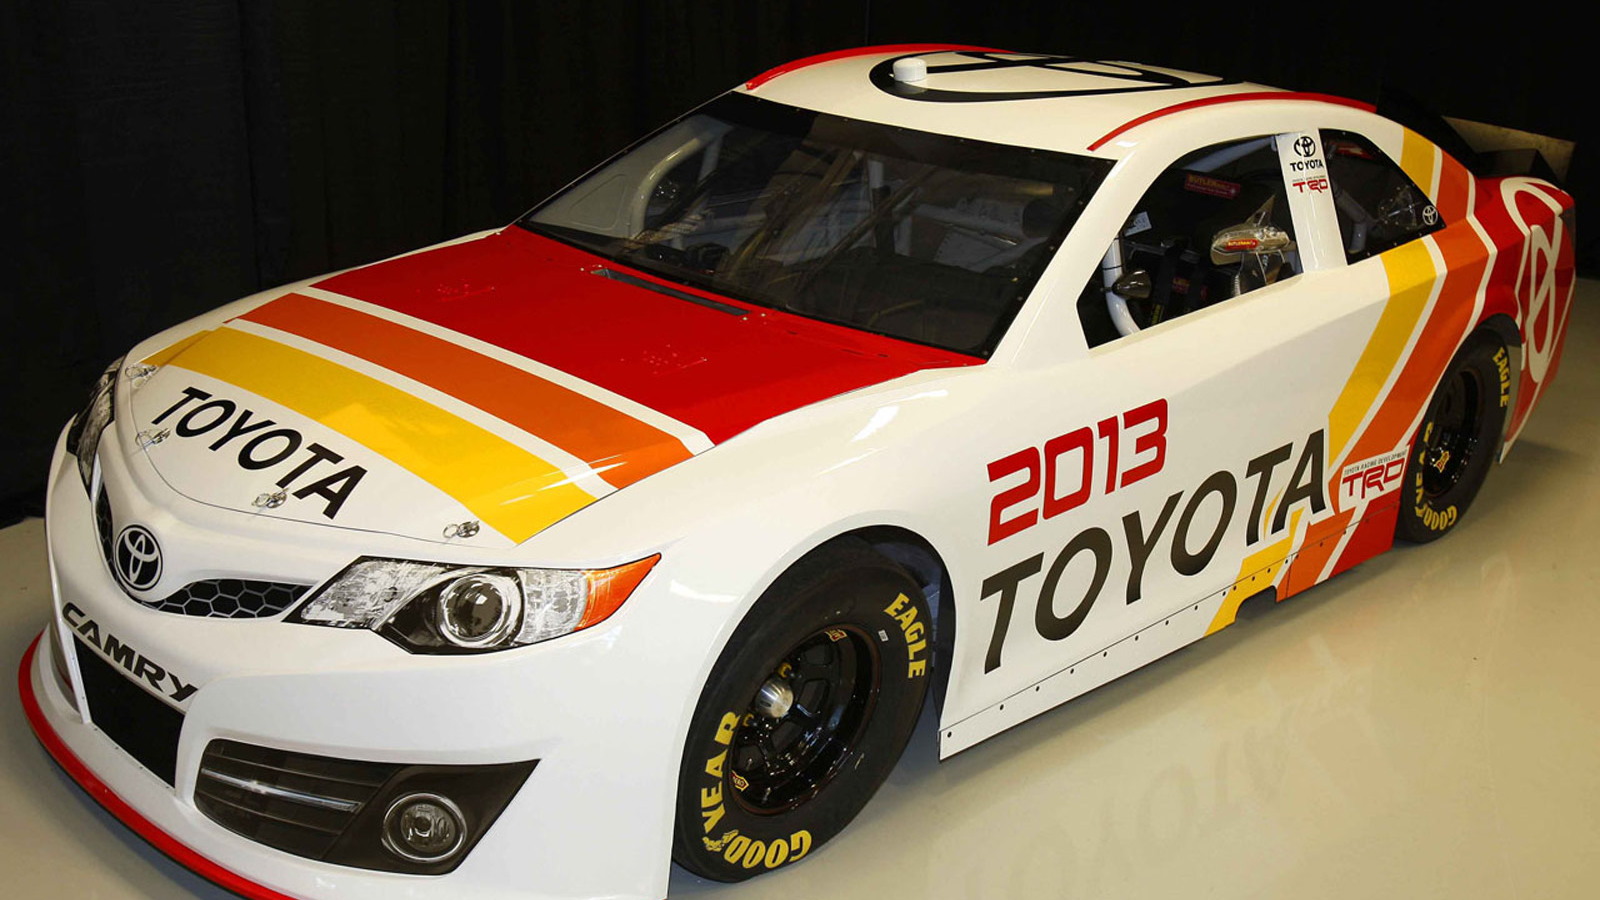 2013 Toyota Camry NASCAR Sprint Cup race car